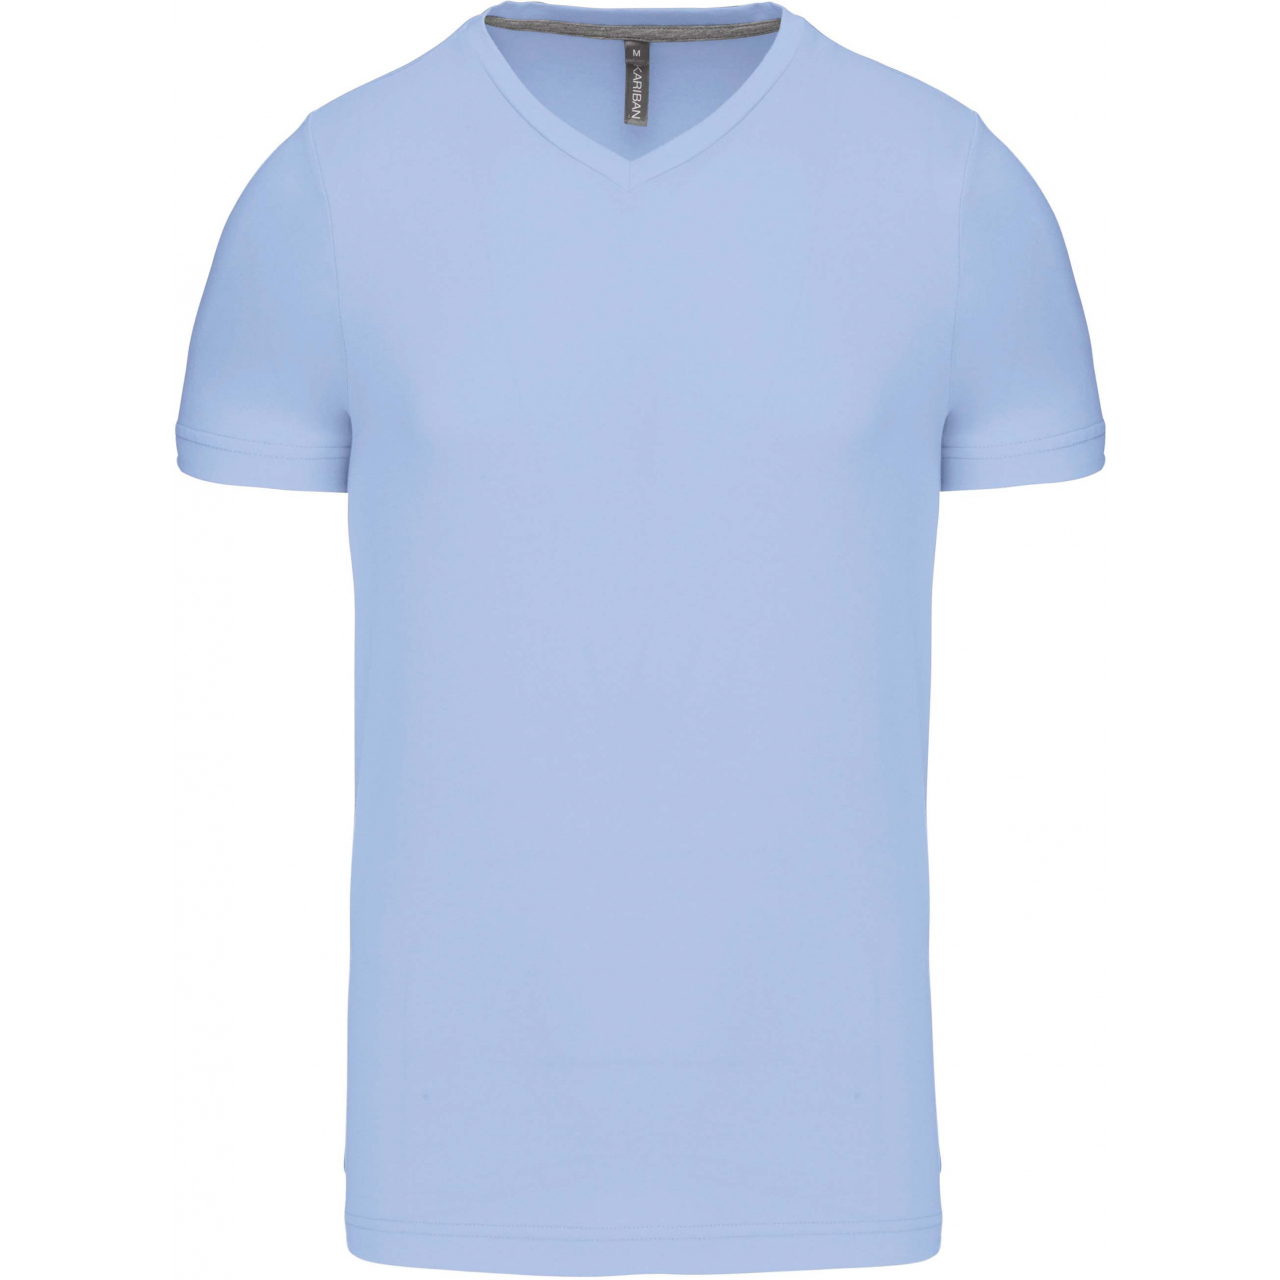 Pánské tričko Kariban krátký rukáv V-neck - světle modré, M